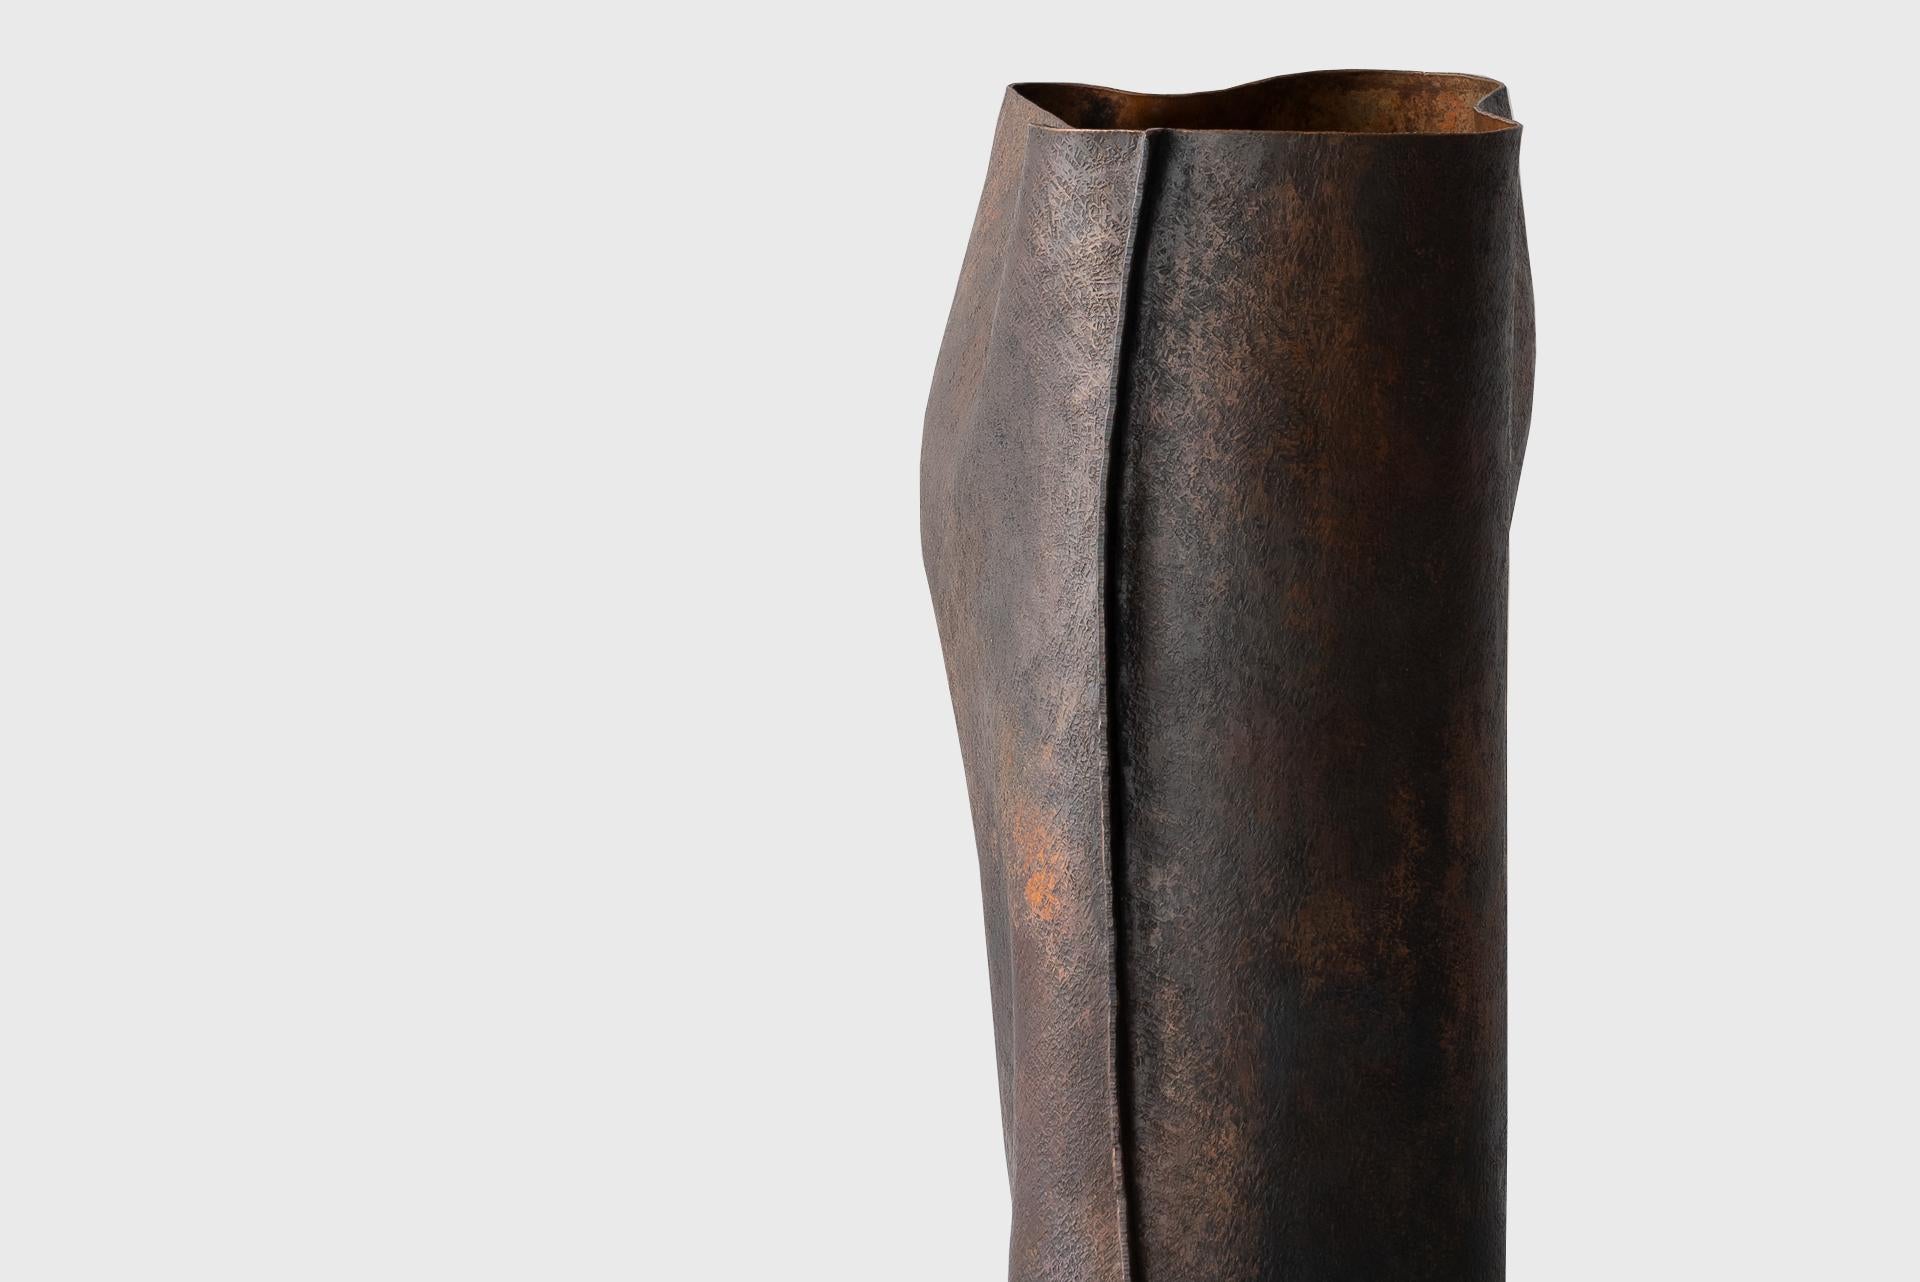 Contemporary Copper Vase 1, Textured Natural Dark Lacquer, Seung Hyun Lee, Korea For Sale 2